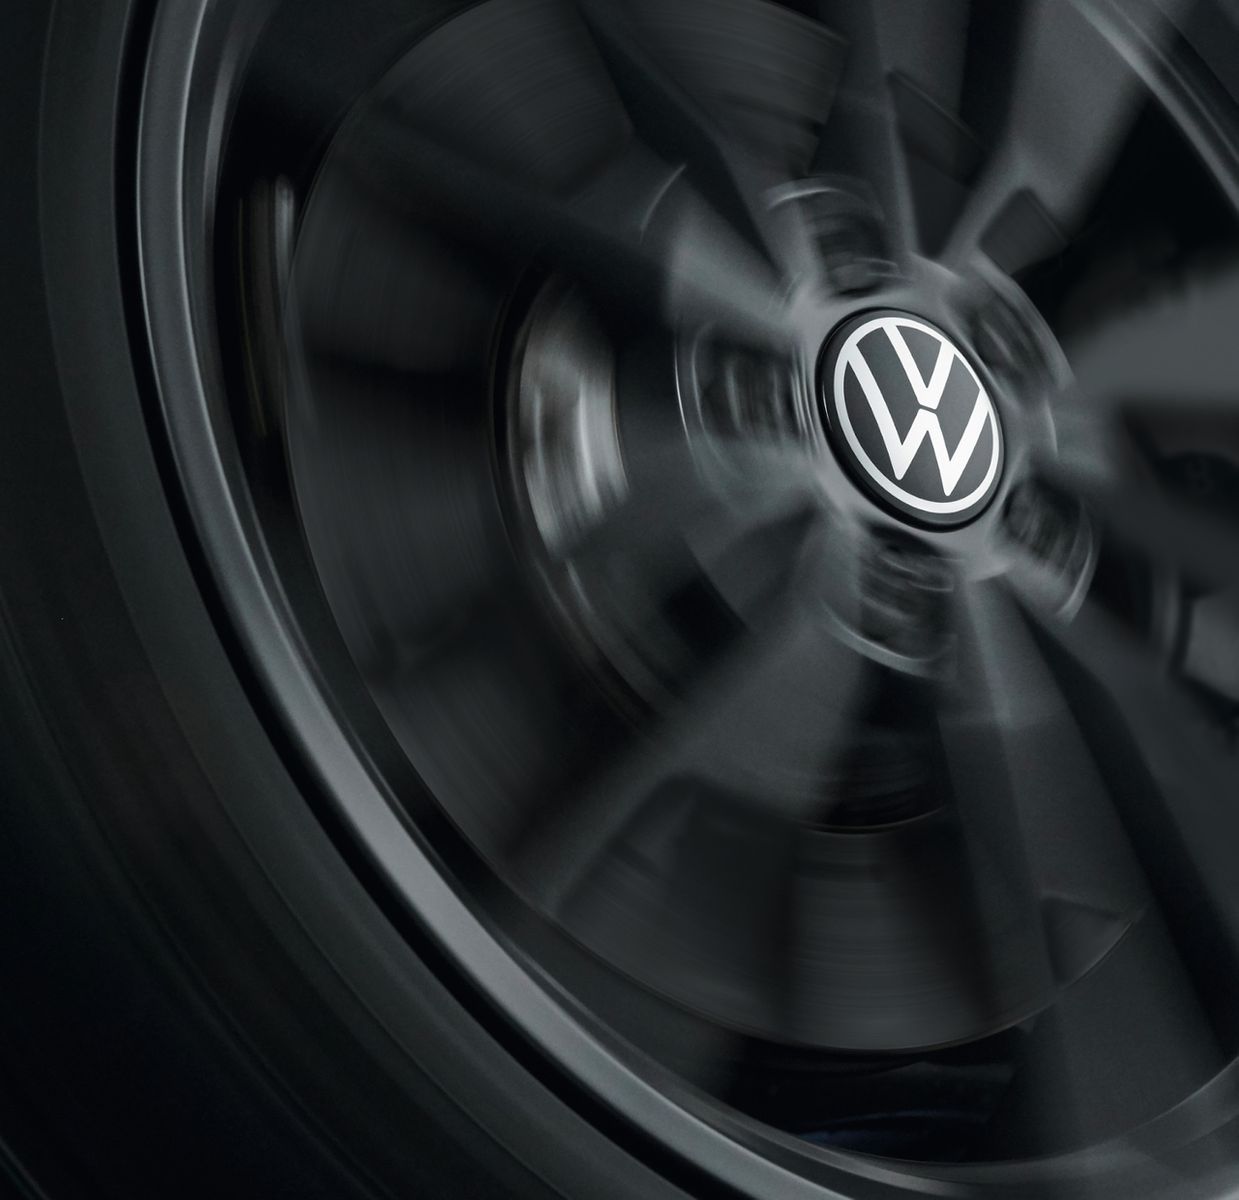 Nabenkappe für LM-Felge dynamisch, neues VW Logo